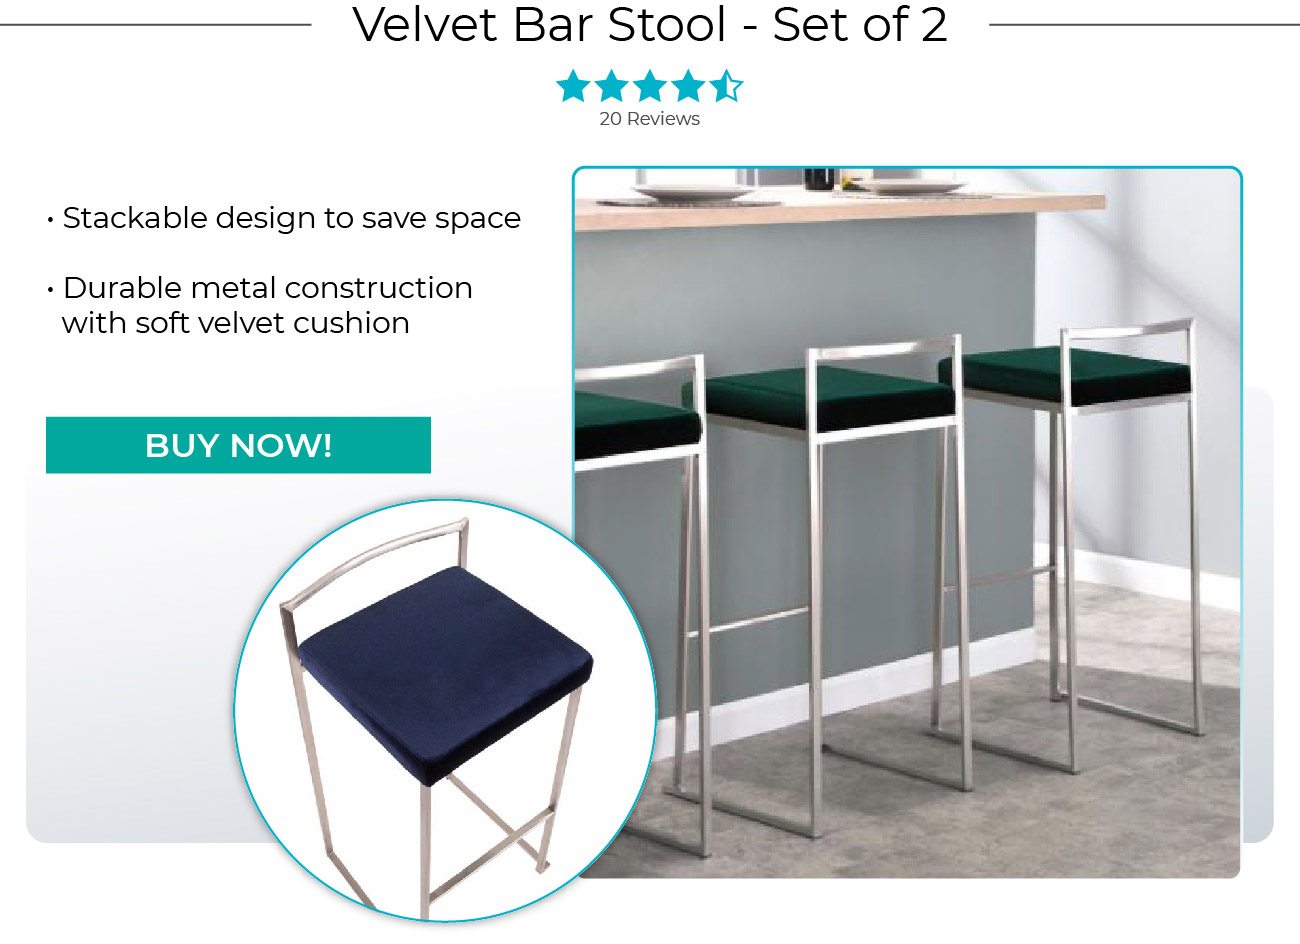 Velvet Bar Stool - Set of 2